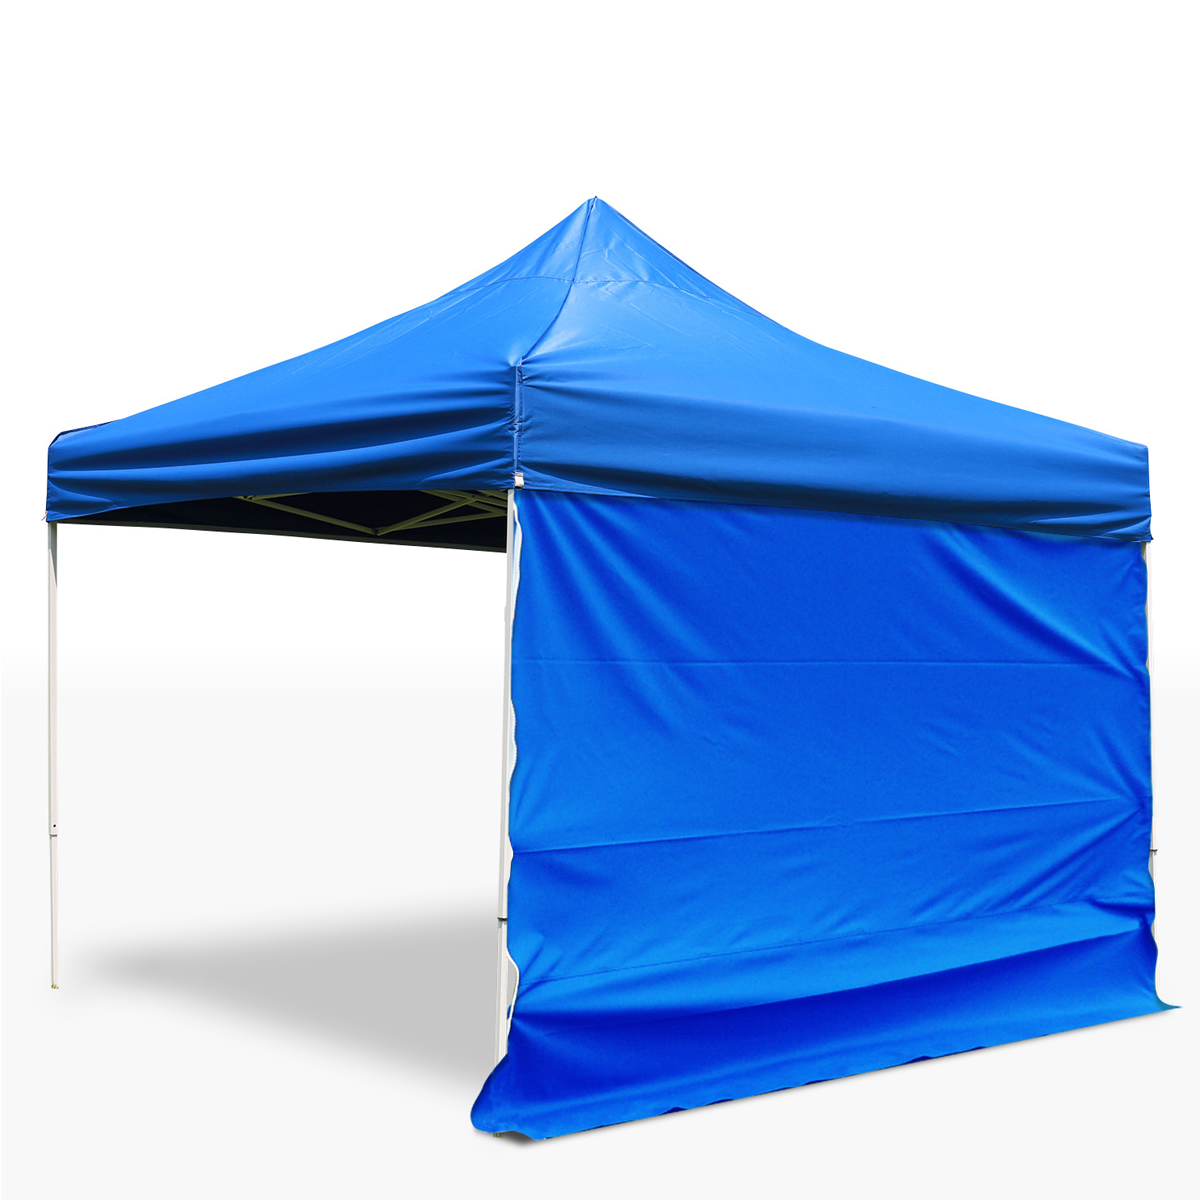  tent width curtain 3M window none side wall side seat waterproof fire prevention UV cut 